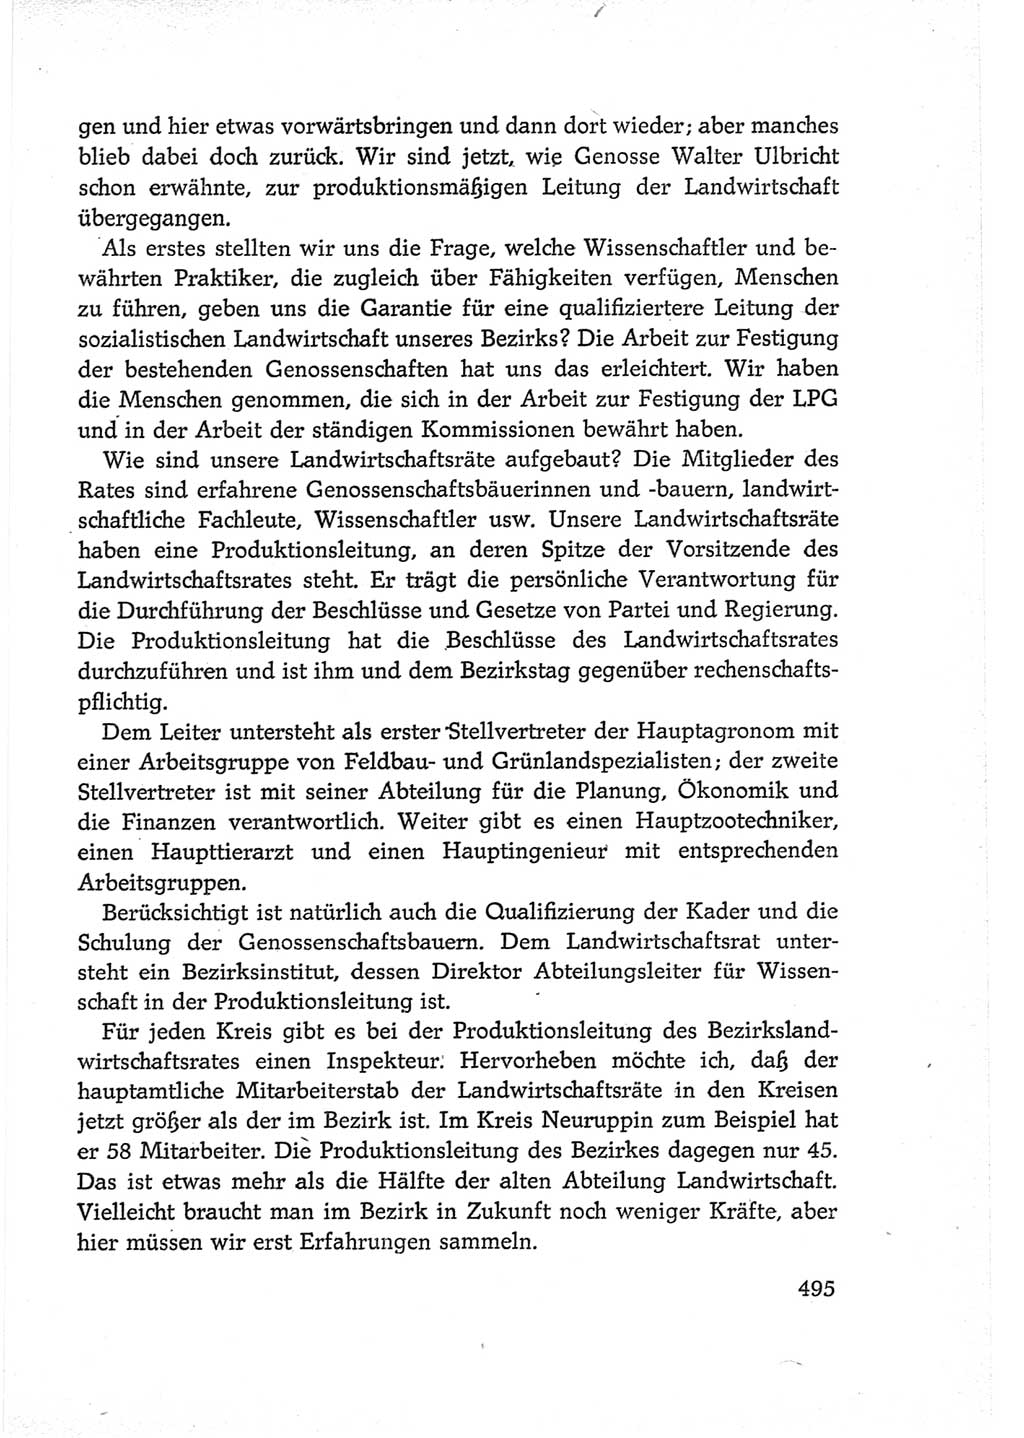 Protokoll der Verhandlungen des Ⅵ. Parteitages der Sozialistischen Einheitspartei Deutschlands (SED) [Deutsche Demokratische Republik (DDR)] 1963, Band Ⅲ, Seite 495 (Prot. Verh. Ⅵ. PT SED DDR 1963, Bd. Ⅲ, S. 495)